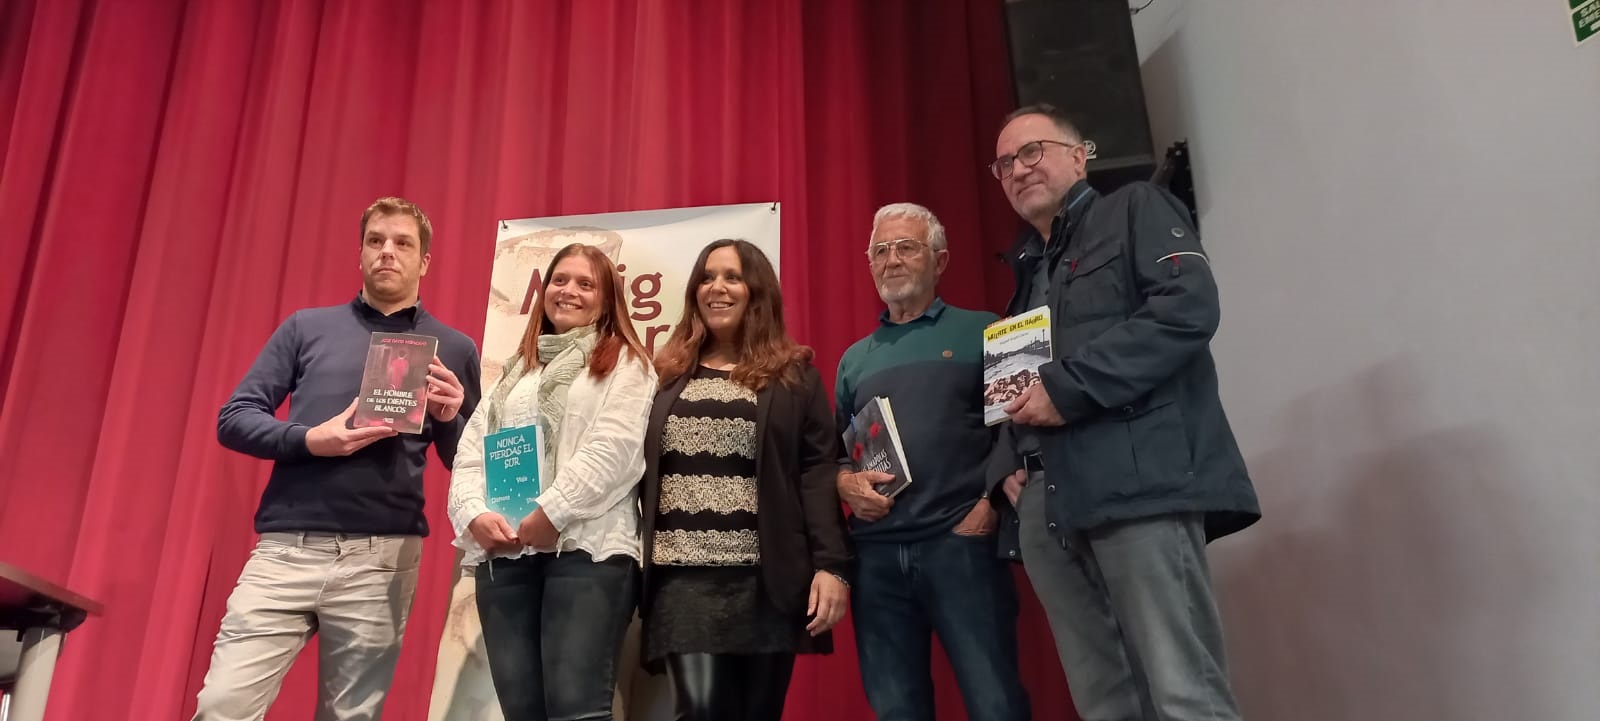 Taula d'autors-es locals al Maig Literari 2022 de Picanya